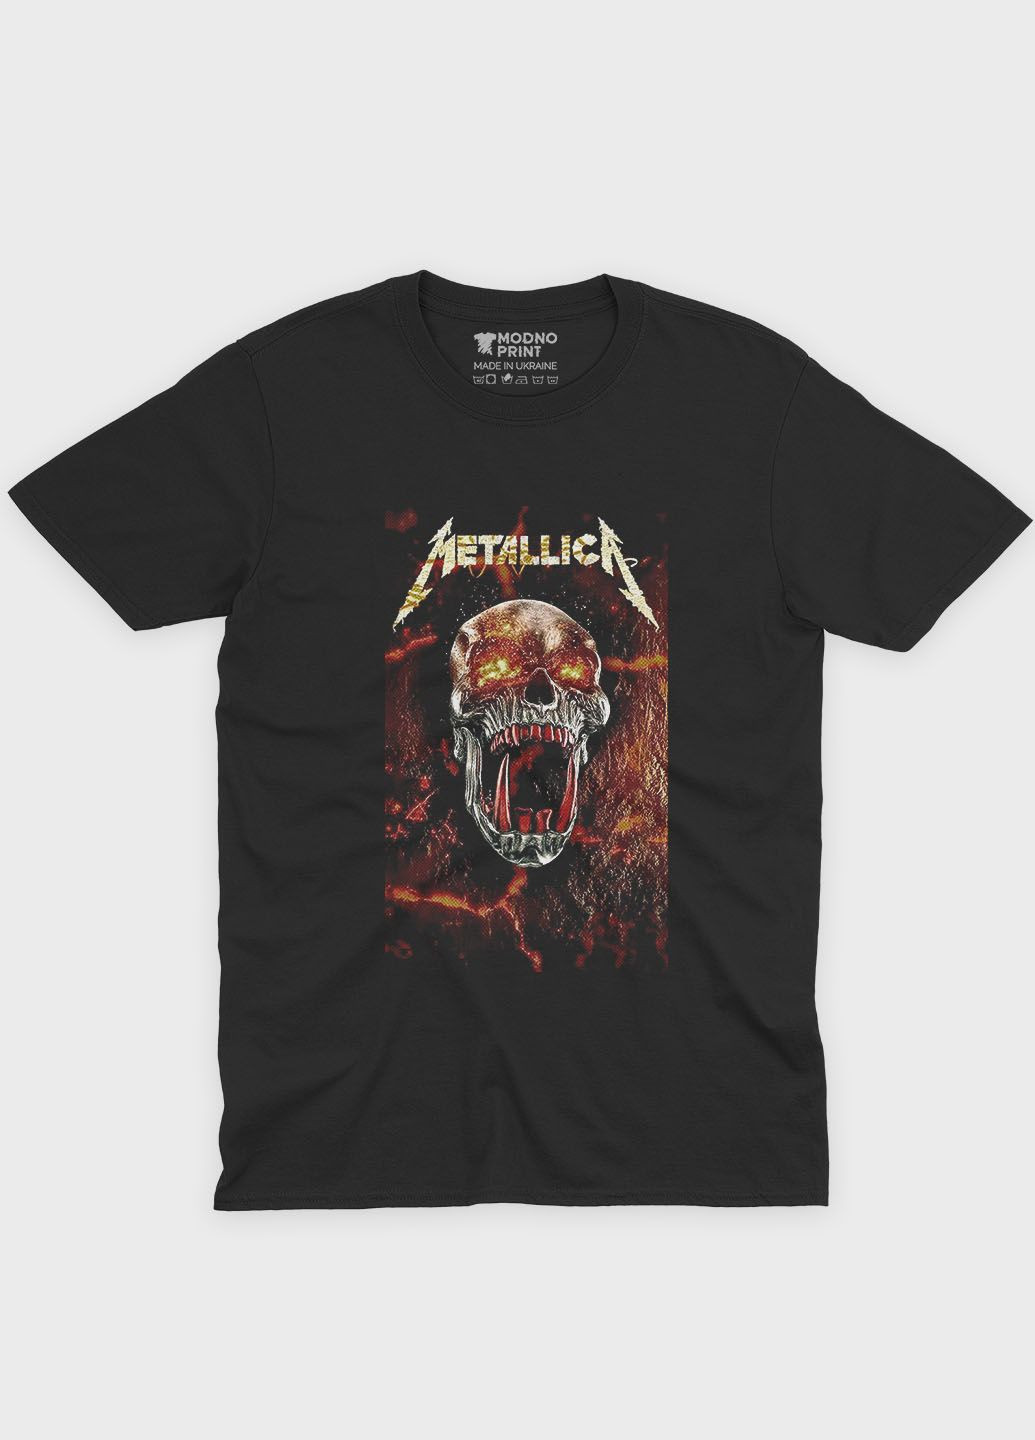 Чорна чоловіча футболка з рок принтом "metallica" (ts001-3-bl-004-2-216) Modno